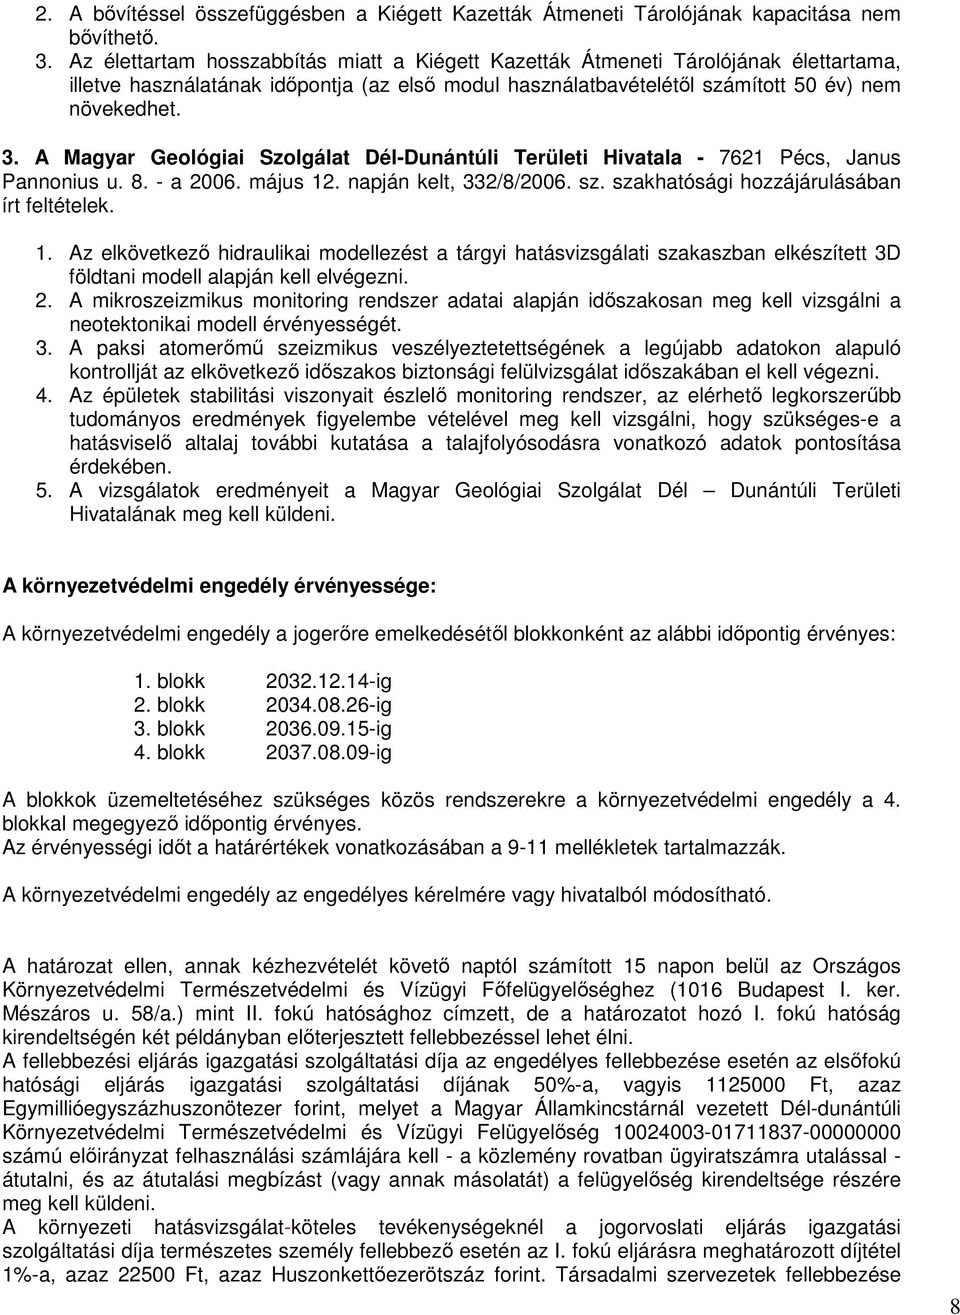 A Magyar Geológiai Szolgálat Dél-Dunántúli Területi Hivatala - 7621 Pécs, Janus Pannonius u. 8. - a 2006. május 12